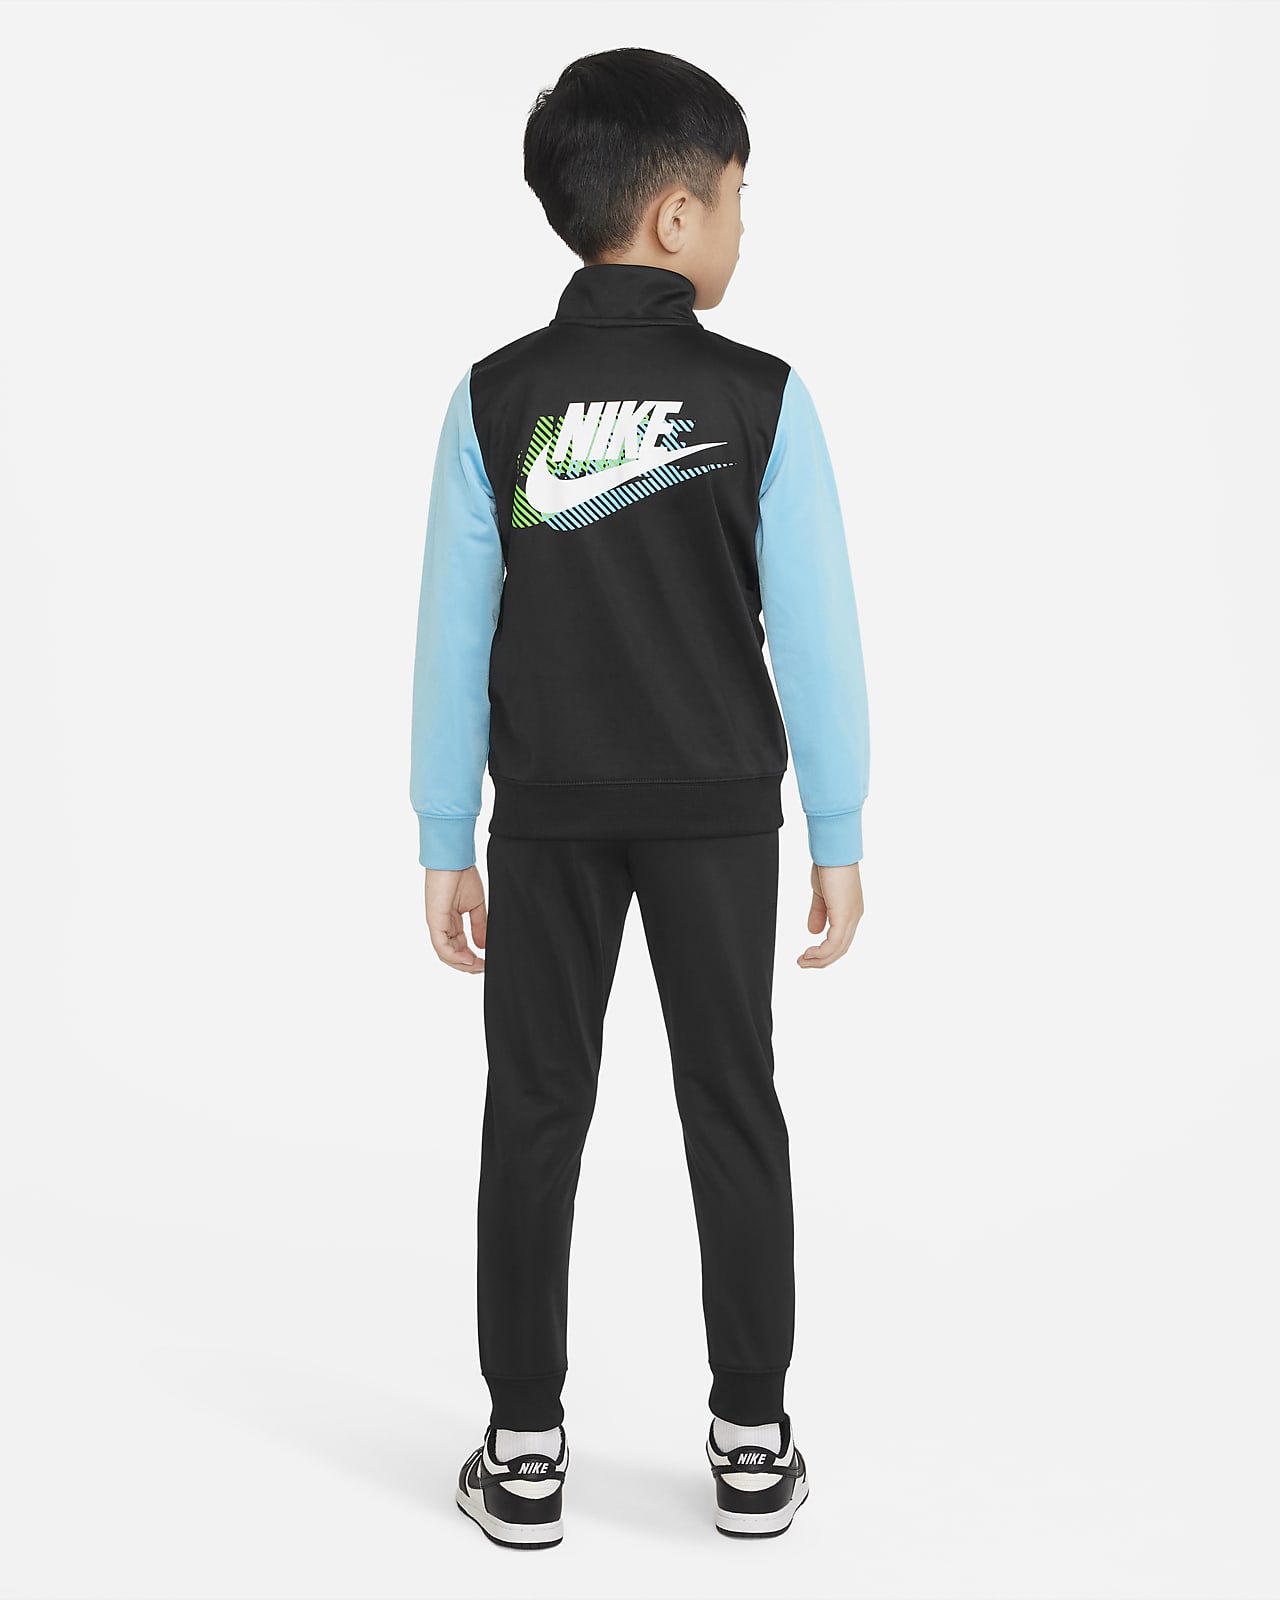 Guide des tailles de vêtements pour Enfant. Nike FR